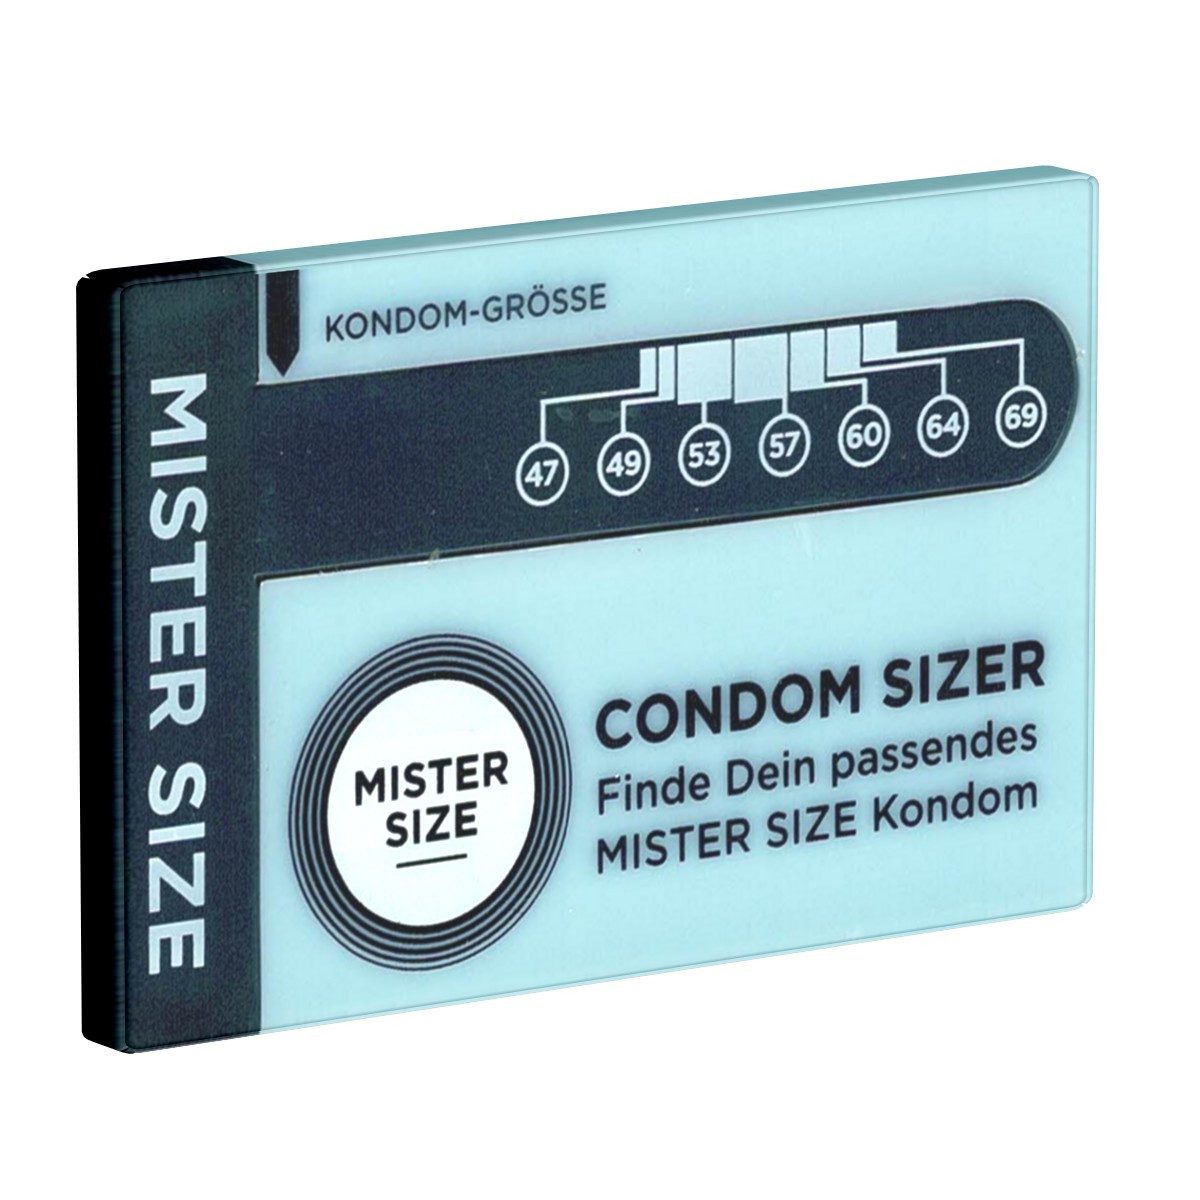 MISTER SIZE Kondome Condom Sizer Sprache: Deutsch, 1 St., bestimmen Sie jetzt Ihre Kondomgröße